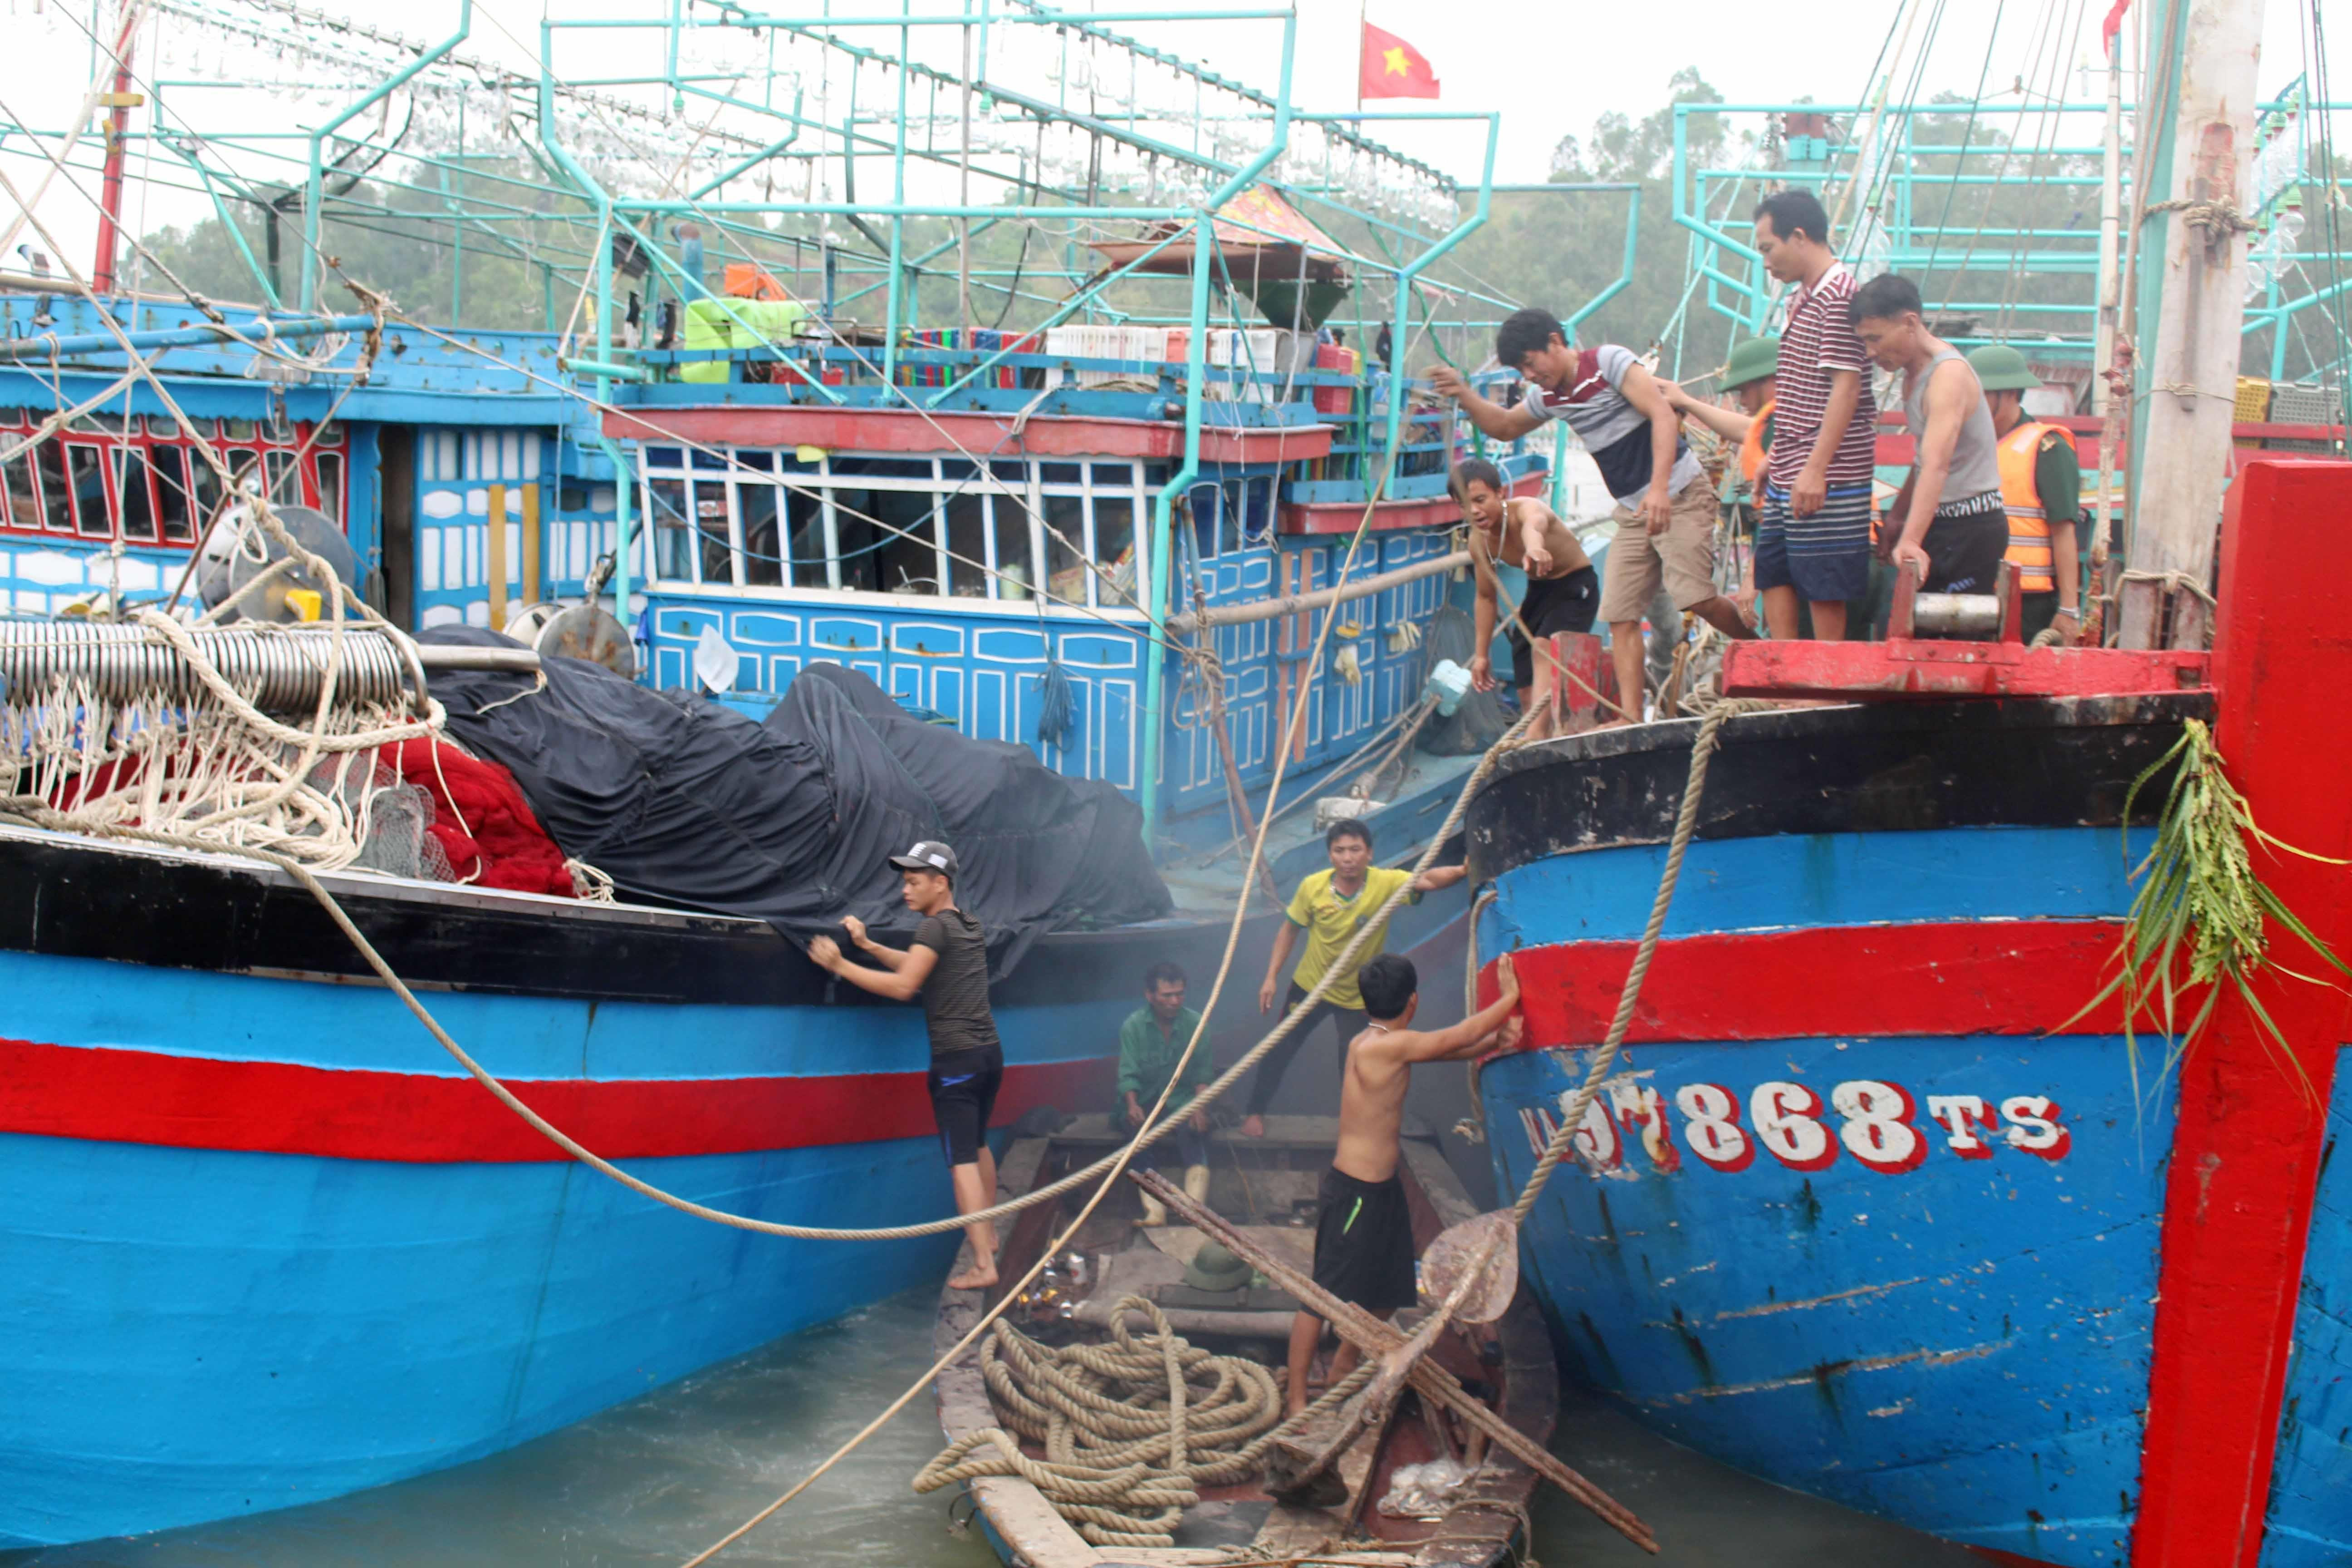 Tính đến 10 giờ sáng ngày 3/7, gần 1.200 tàu cá của ngư dân Quỳnh Lưu đã về bến tránh trú an toàn. Riêng vẫn còn 25 tàu vẫn chưa liên lạc được. Ảnh: Việt Hùng